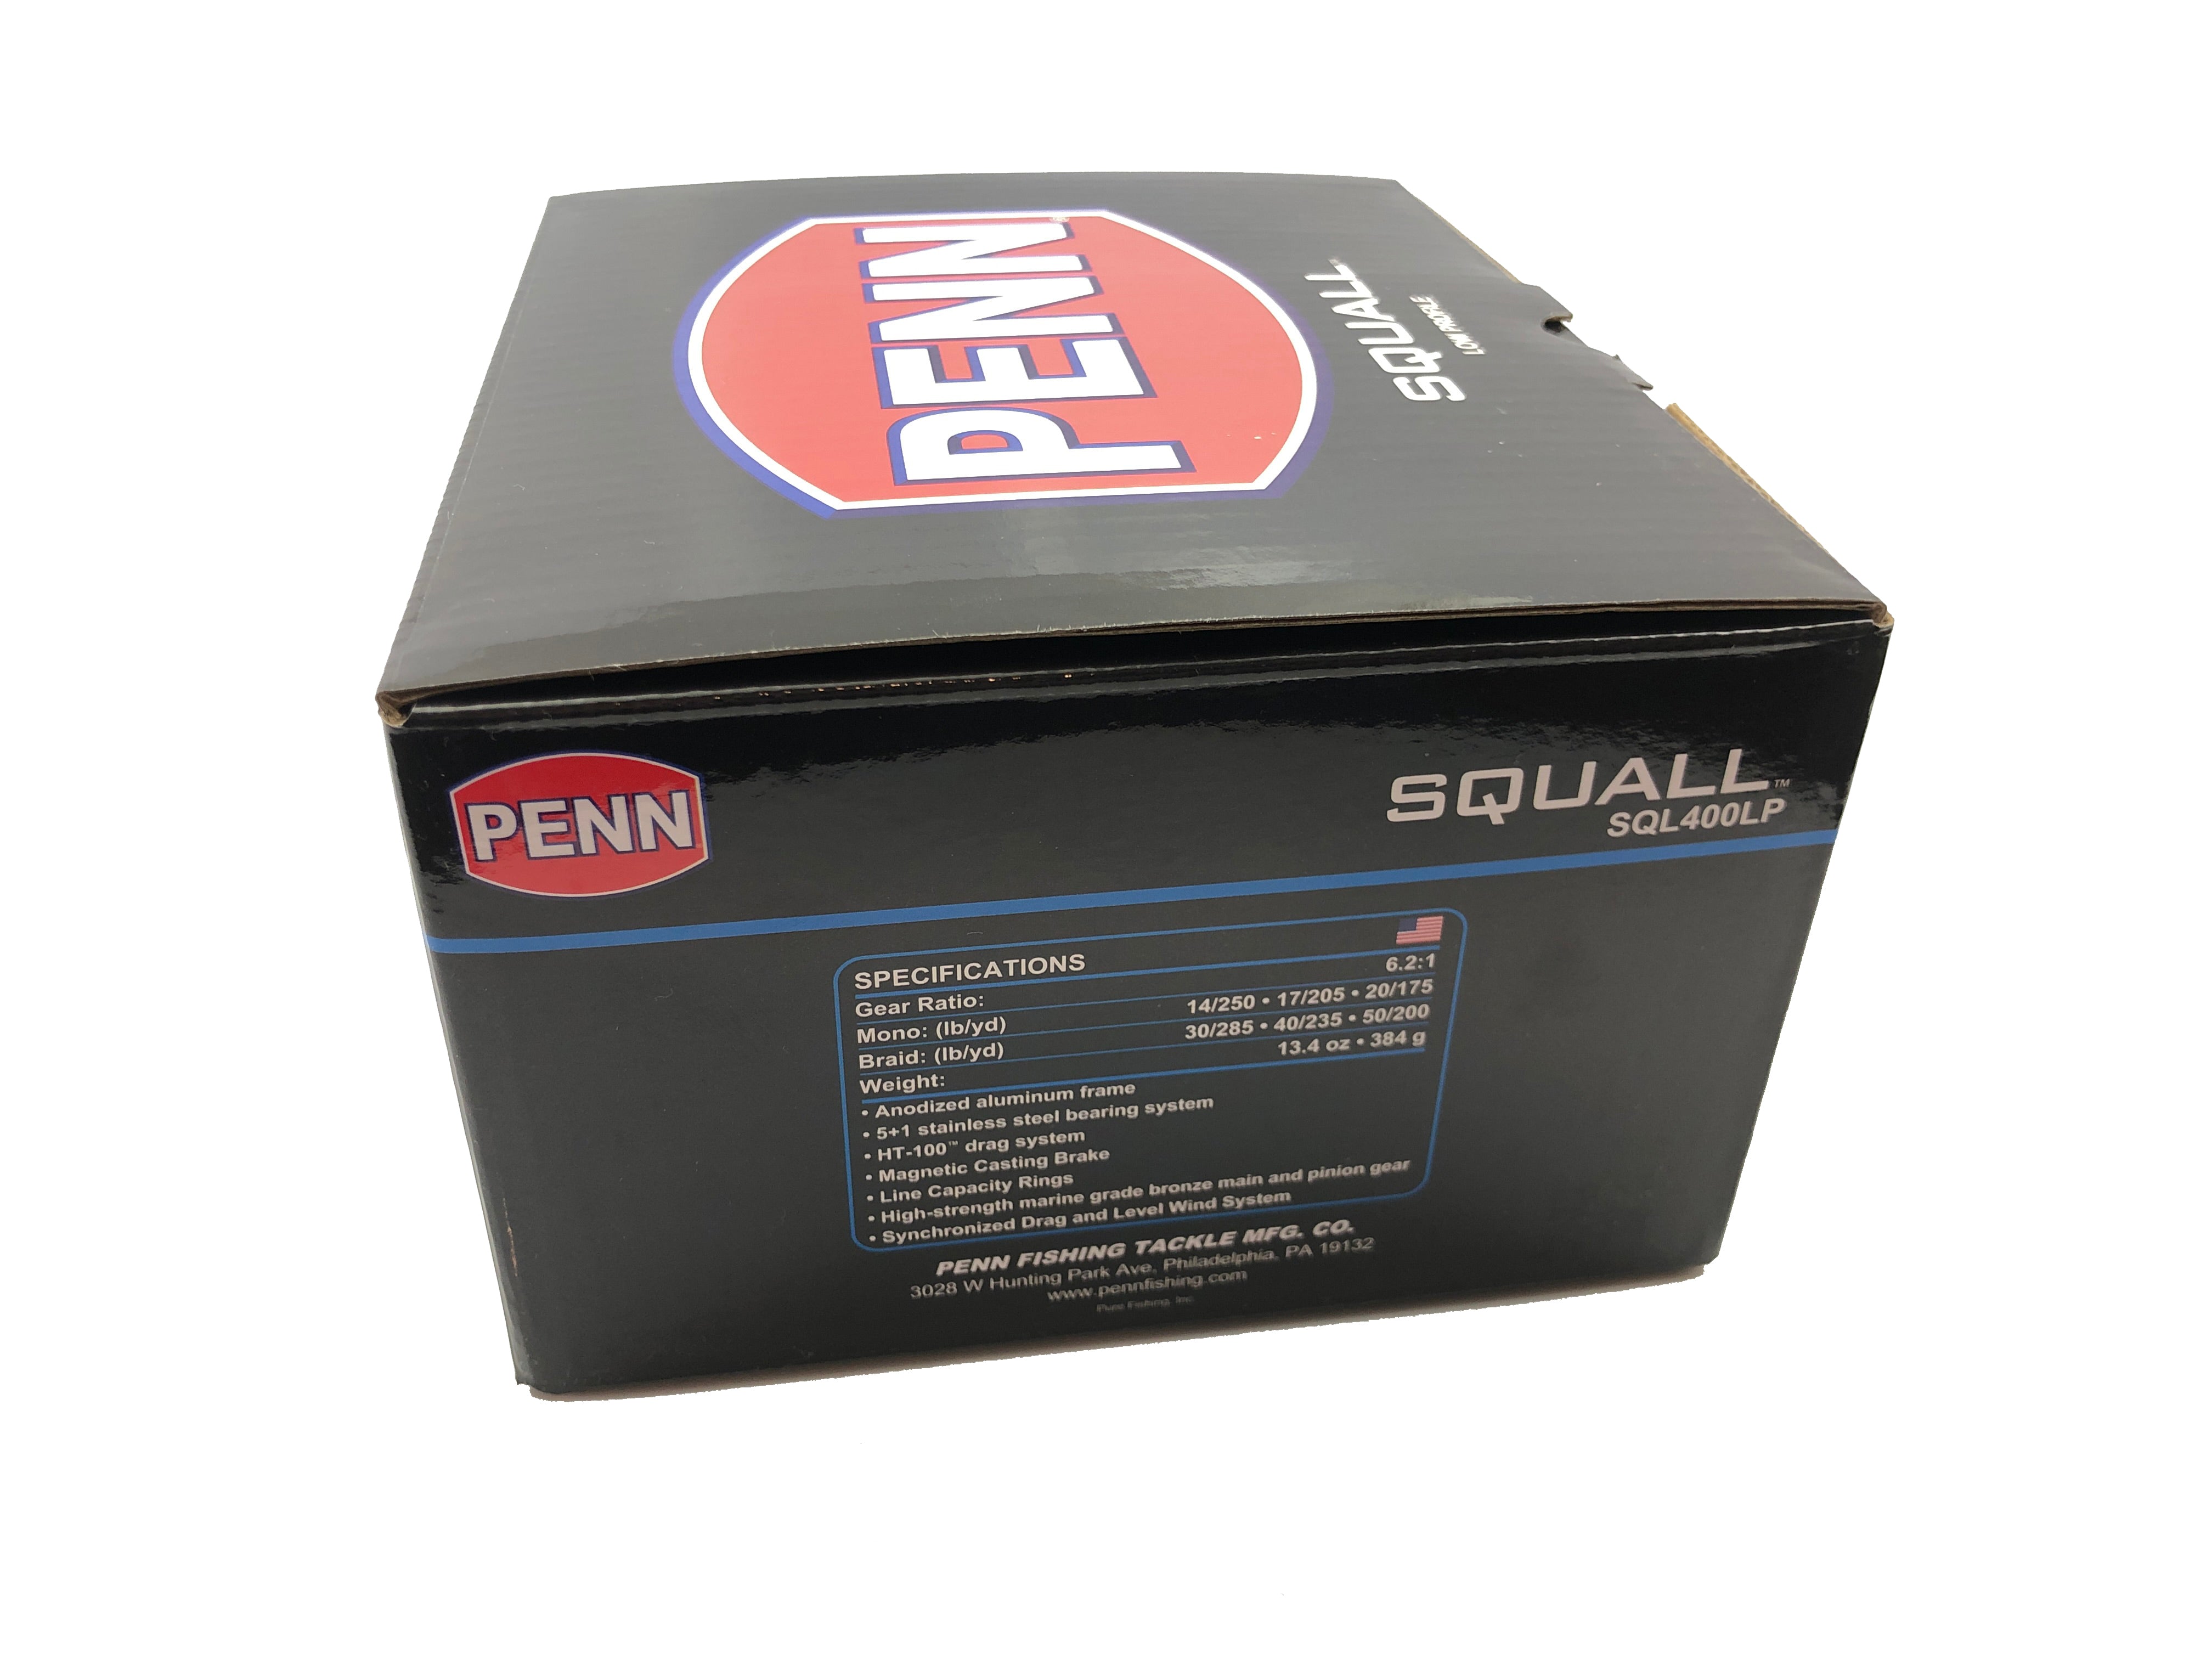 Penn Squall Low Profile Baitcasting Reel - SQL400LP